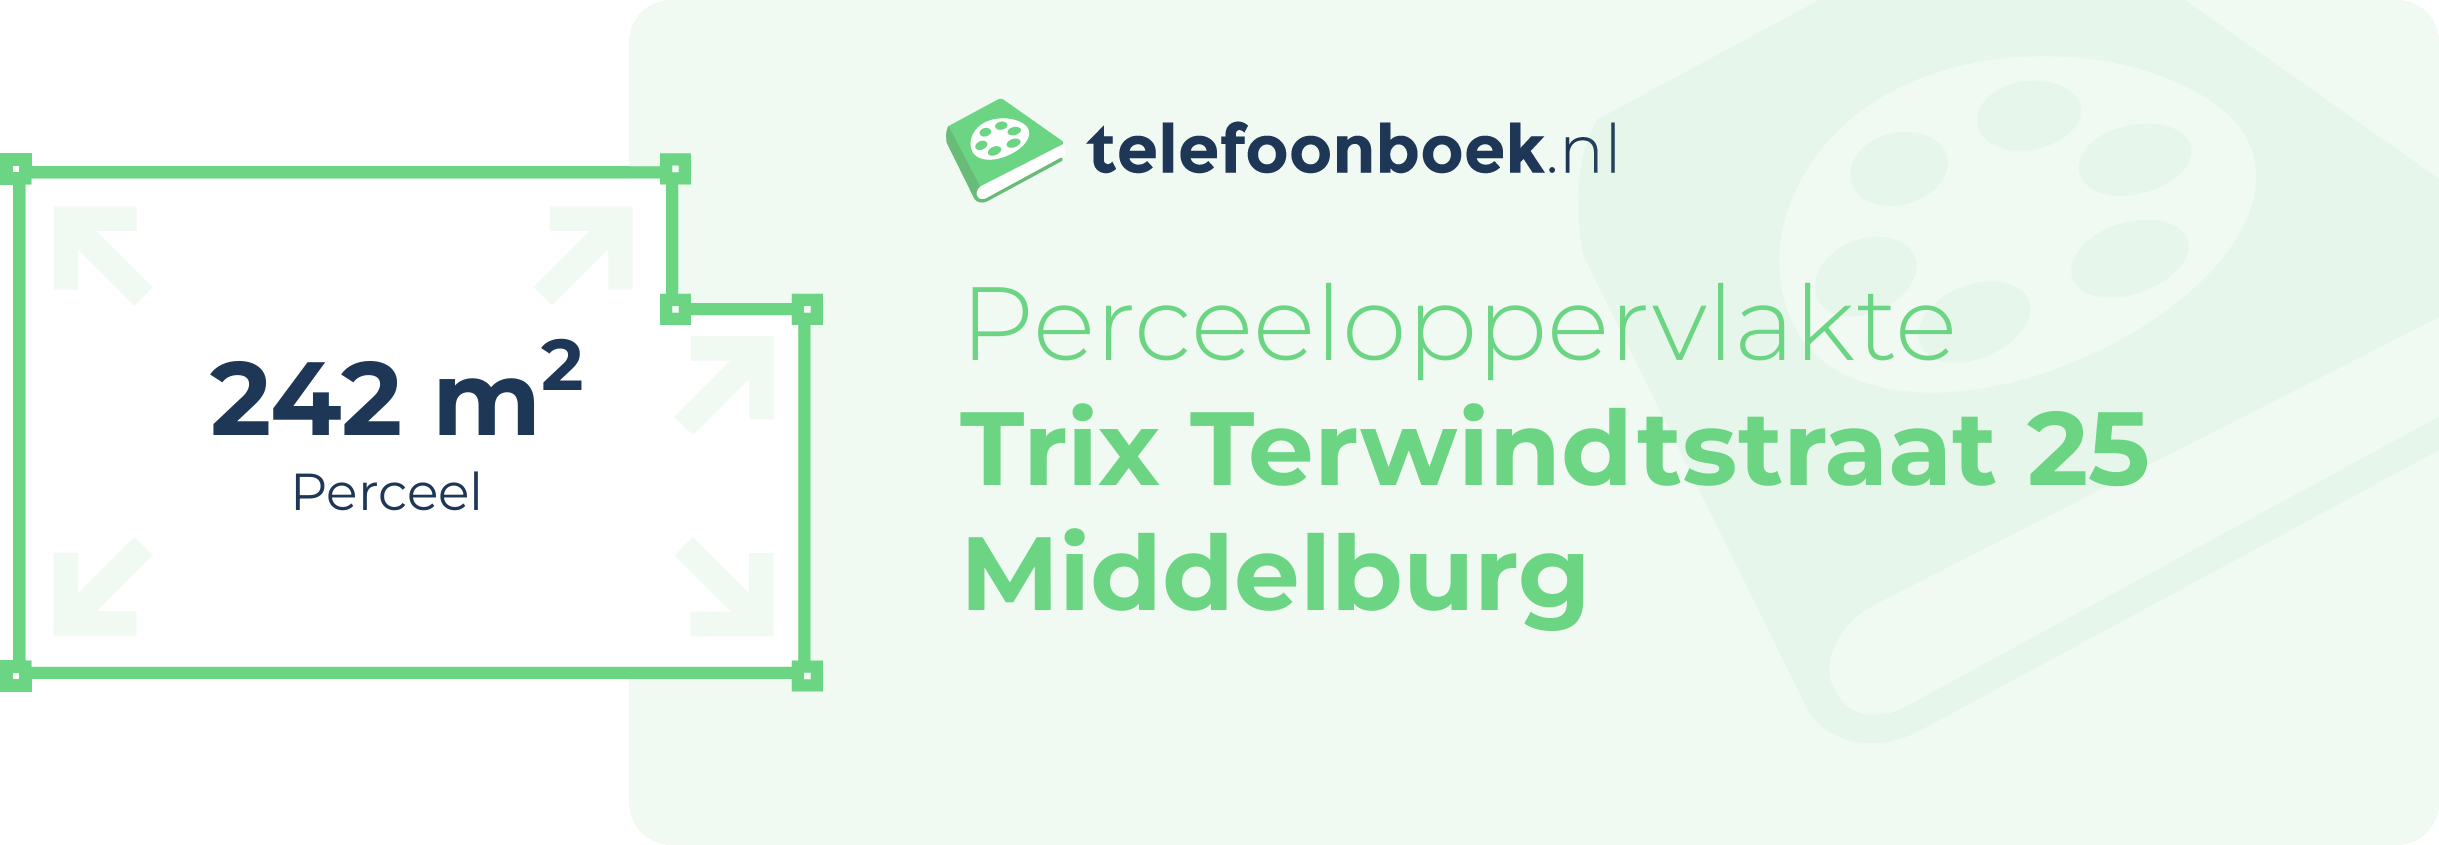 Perceeloppervlakte Trix Terwindtstraat 25 Middelburg